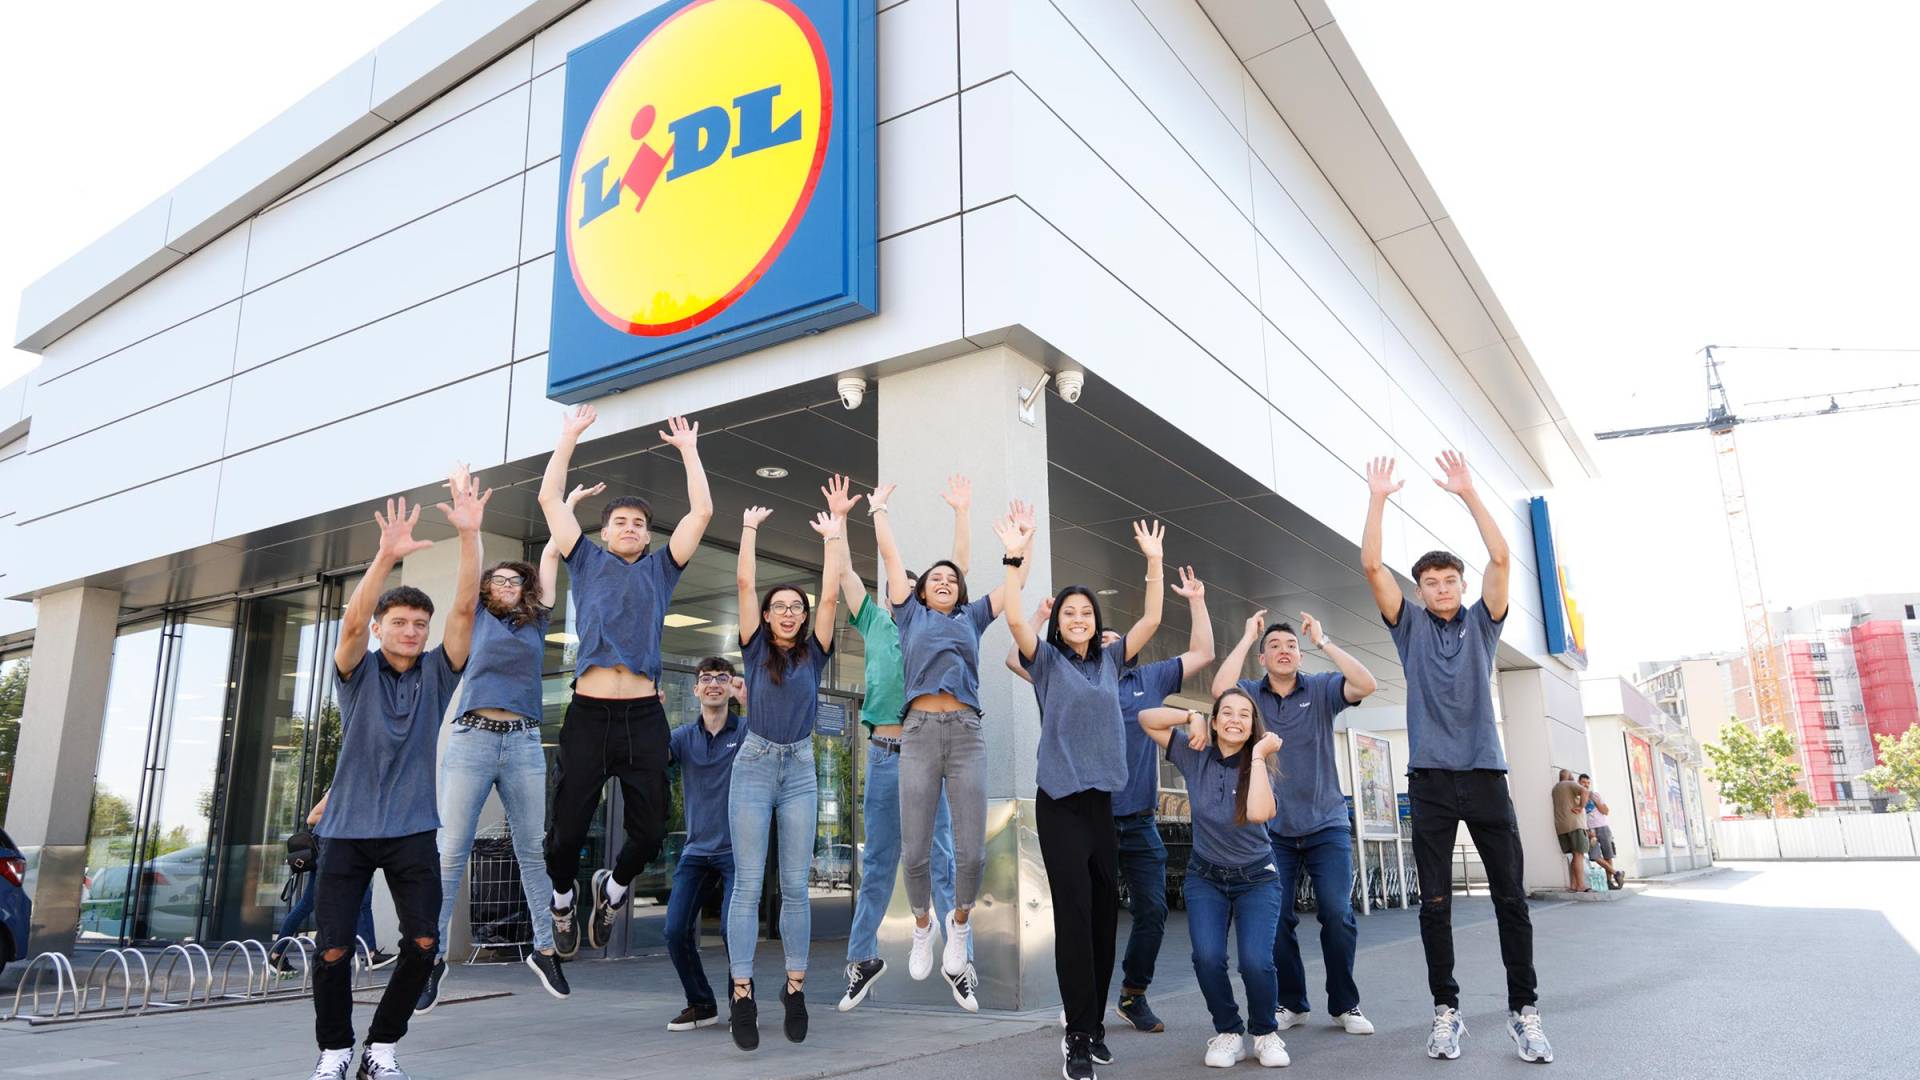 Младежи изразяват радостта си пред магазин на Лидл България